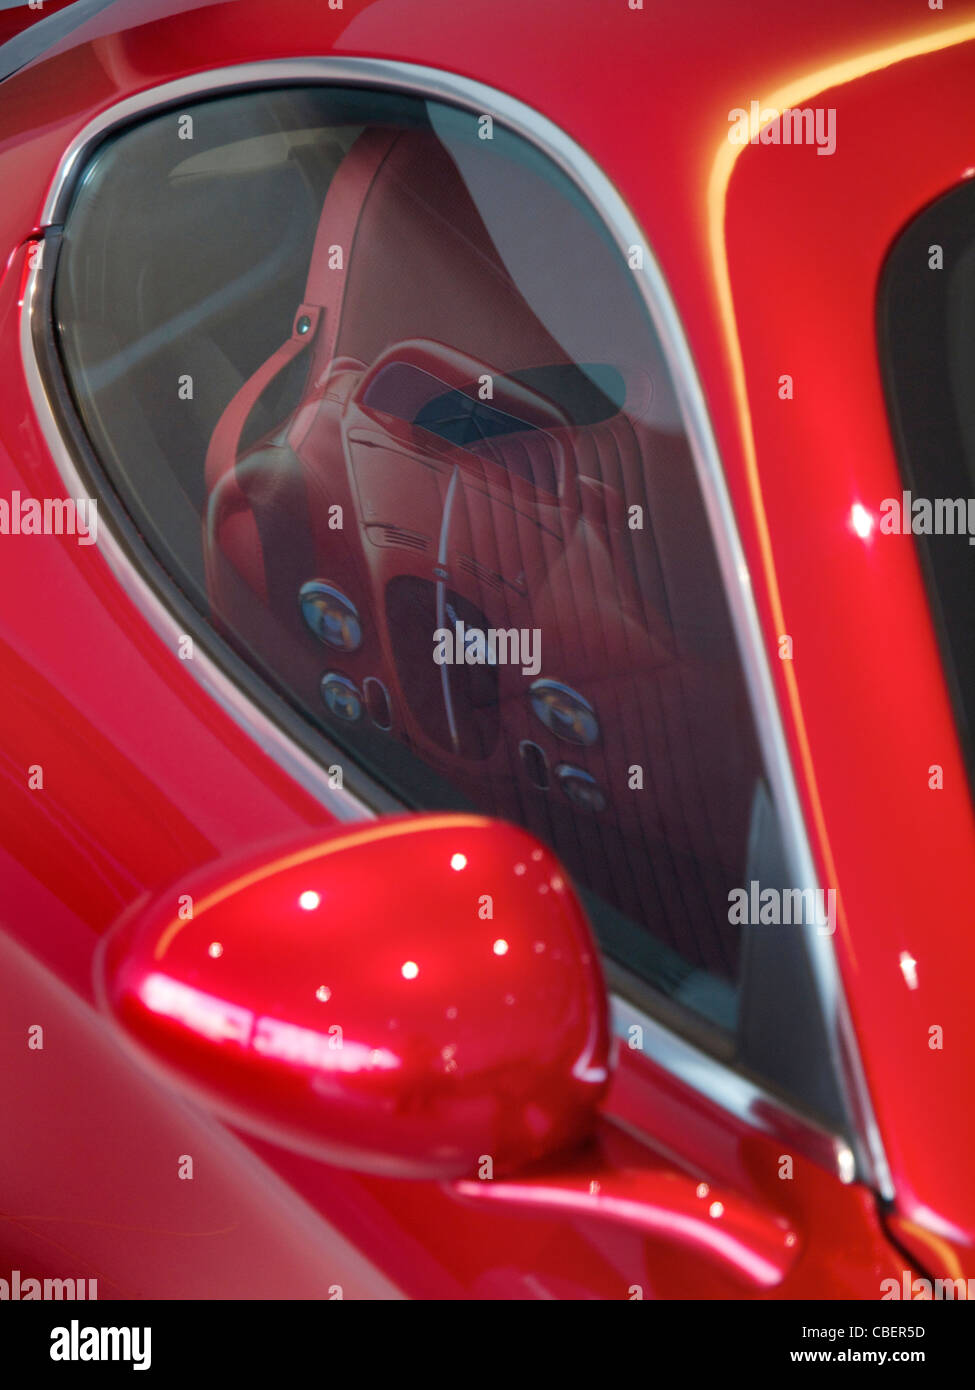 Alfa Romeo 8C Competizione détaillée avec le modèle 8C historique reflète dans la fenêtre. Banque D'Images